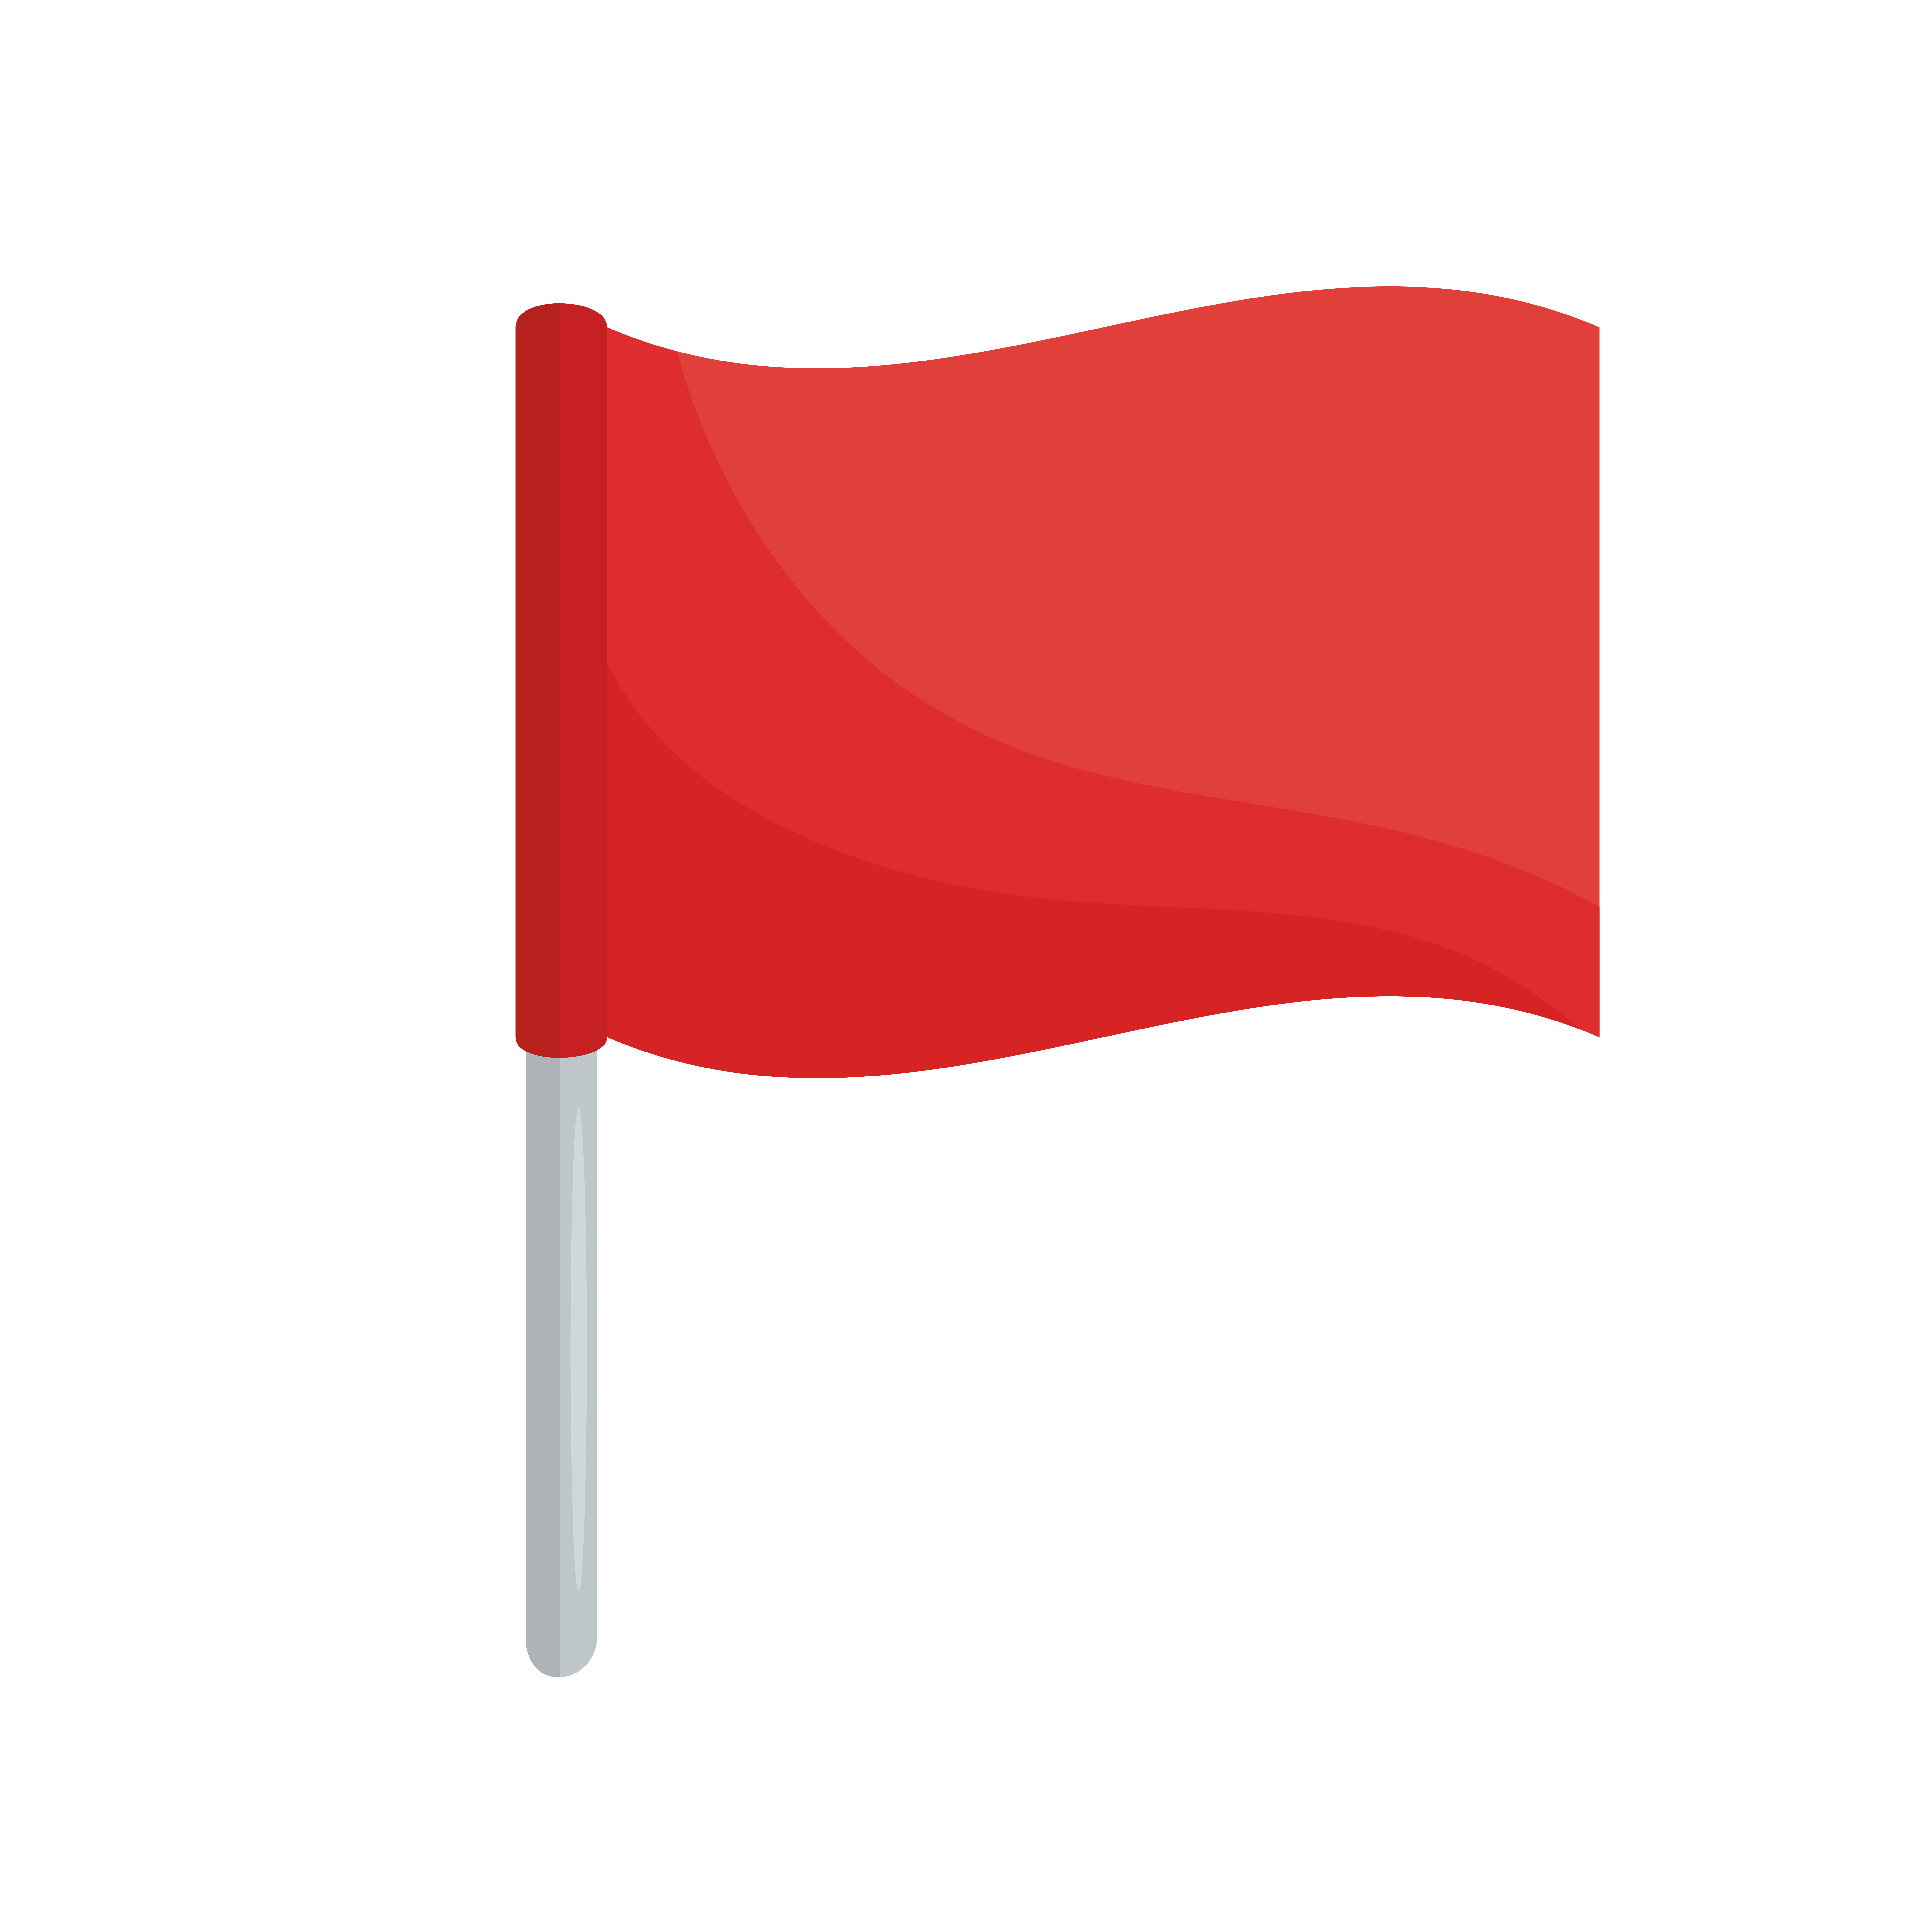 Tibio Rebobinar Tratar Bandera Roja Vectores, Iconos, Gráficos y Fondos para Descargar Gratis